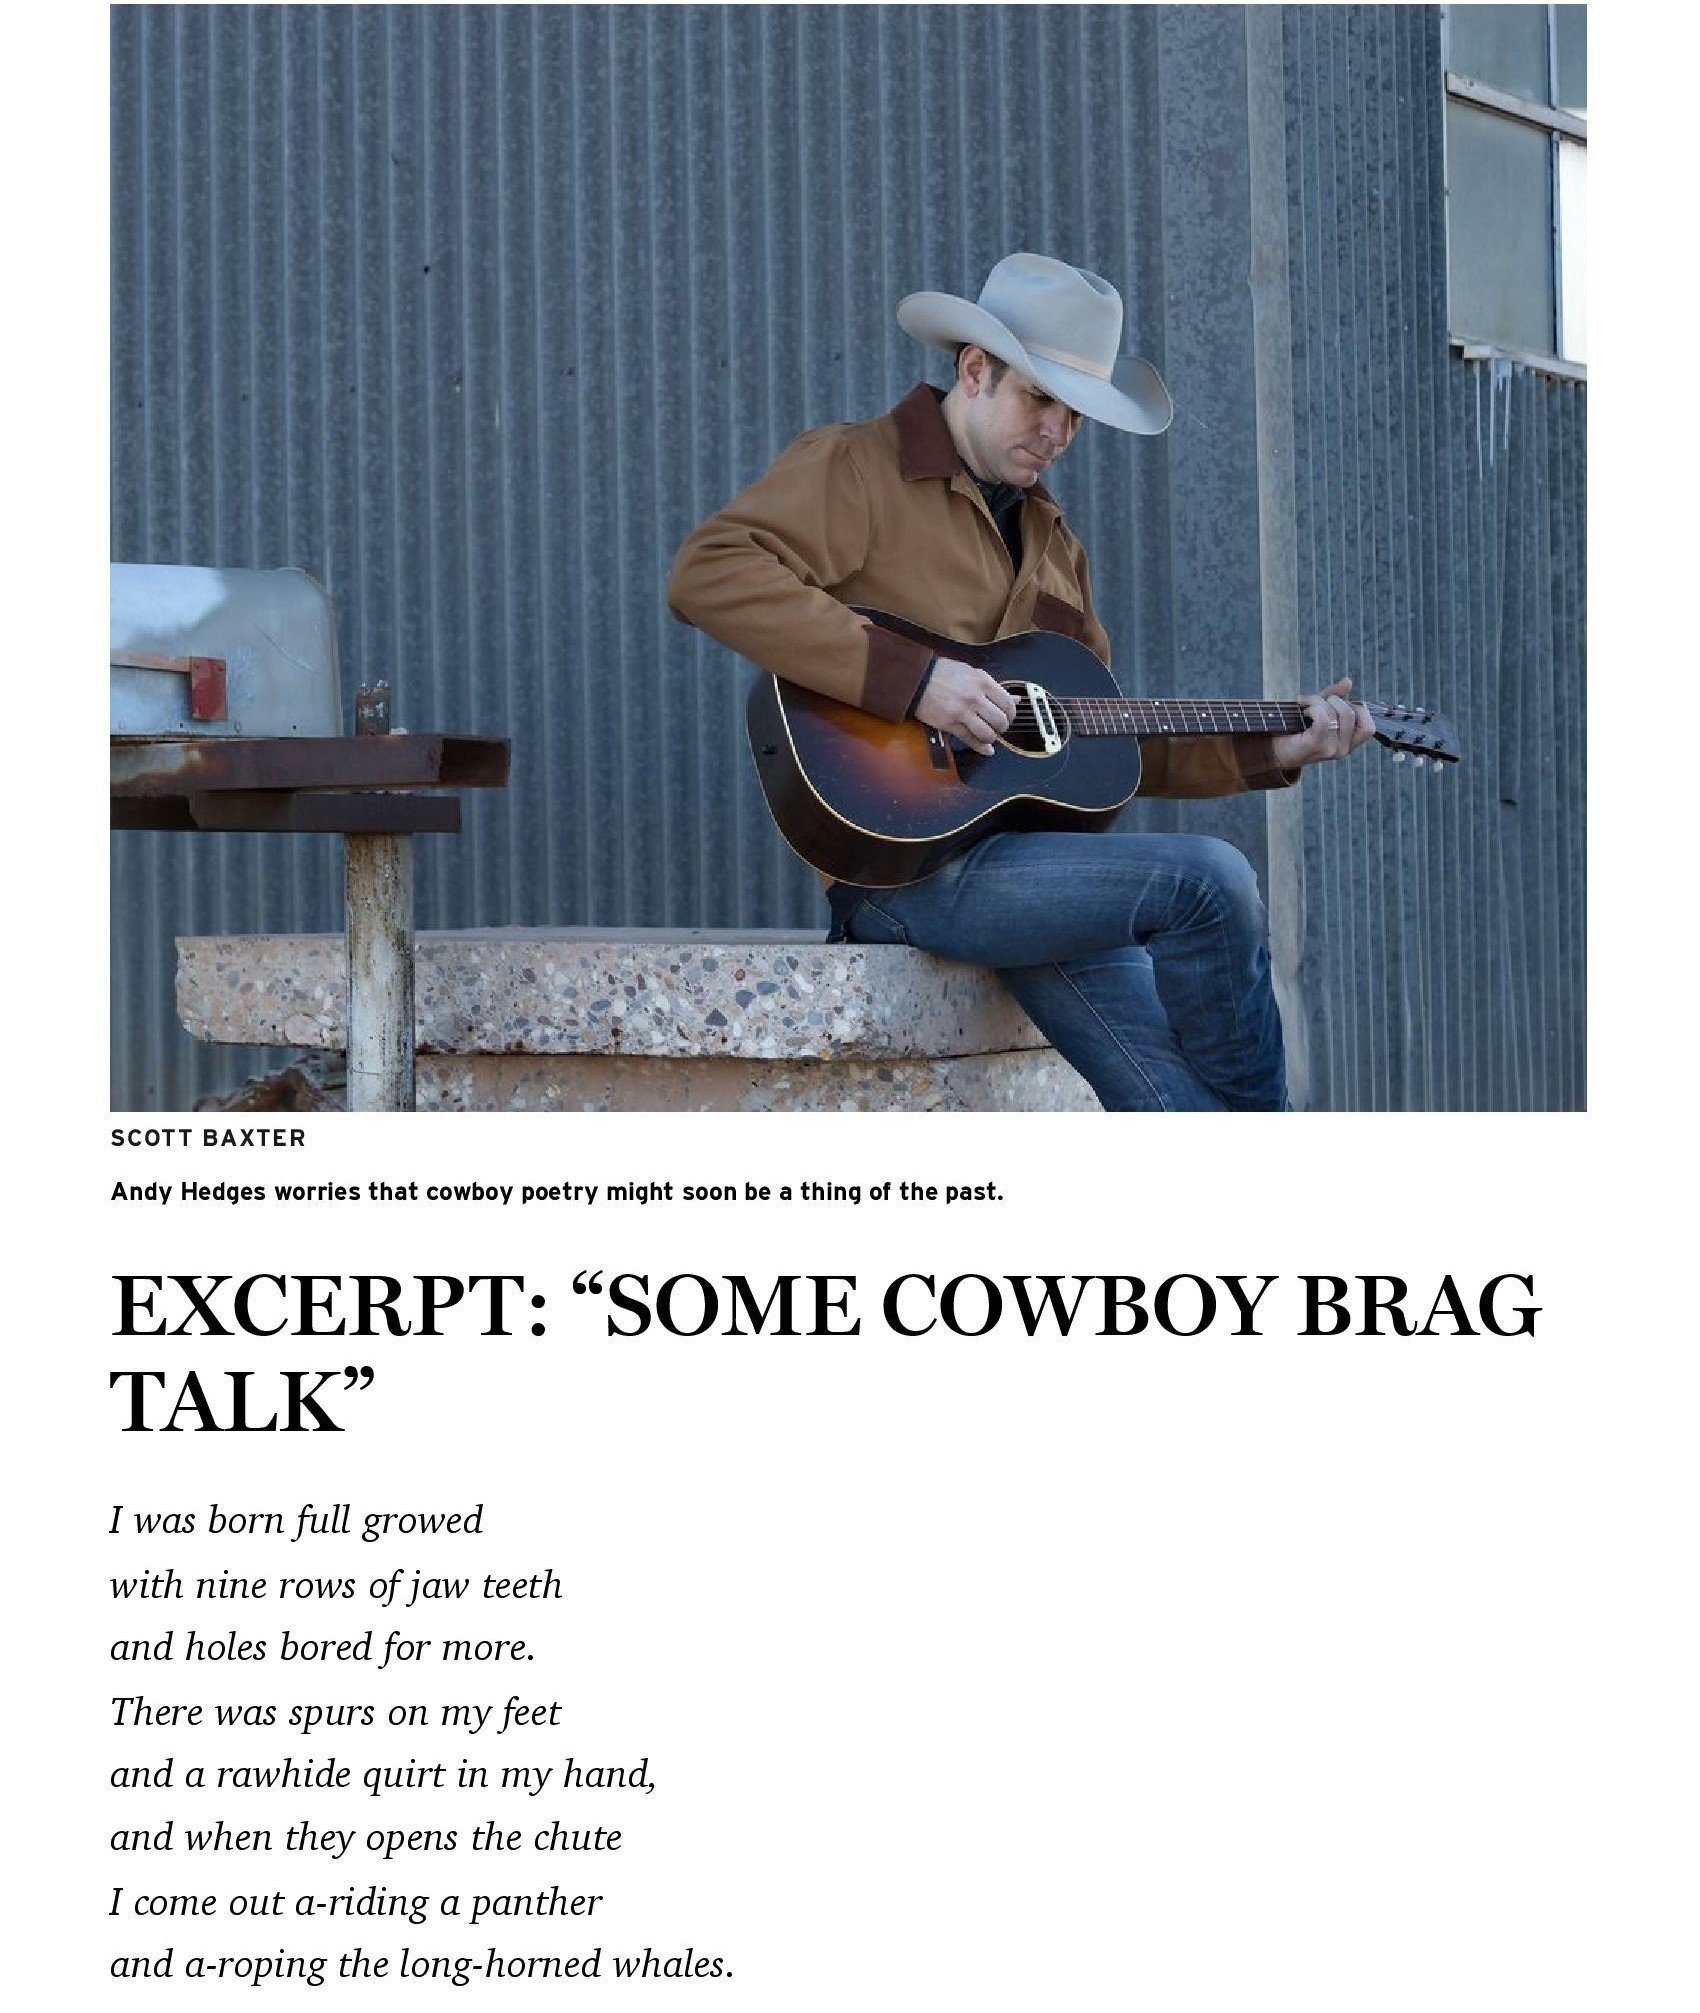 Cowboy Poets of the New West Alternate_00023.jpg